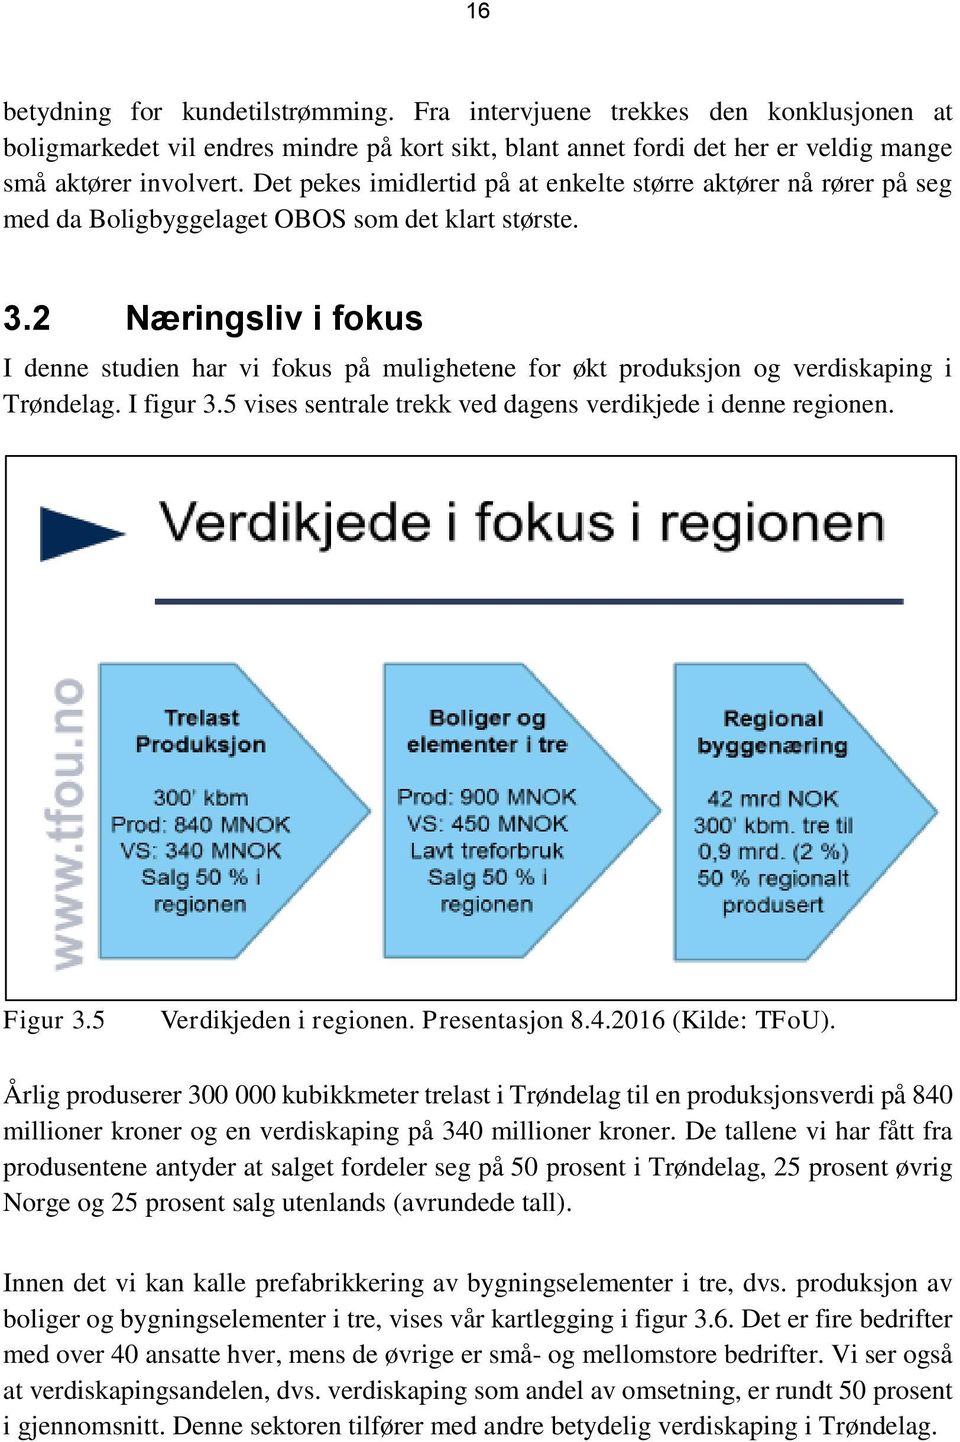 2 Næringsliv i fokus I denne studien har vi fokus på mulighetene for økt produksjon og verdiskaping i Trøndelag. I figur 3.5 vises sentrale trekk ved dagens verdikjede i denne regionen. Figur 3.